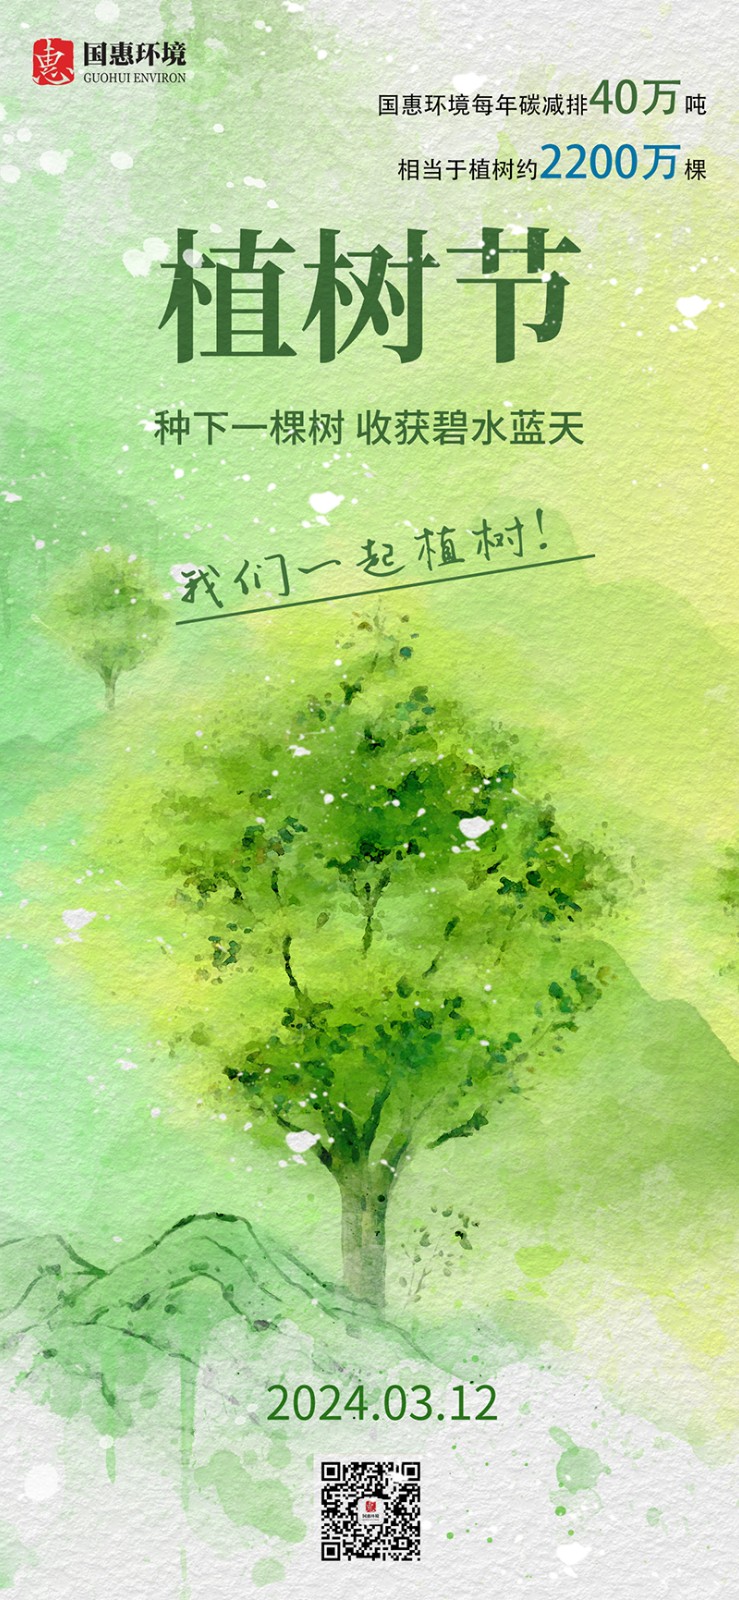 浅绿色植树节海报 拷贝 2.jpg